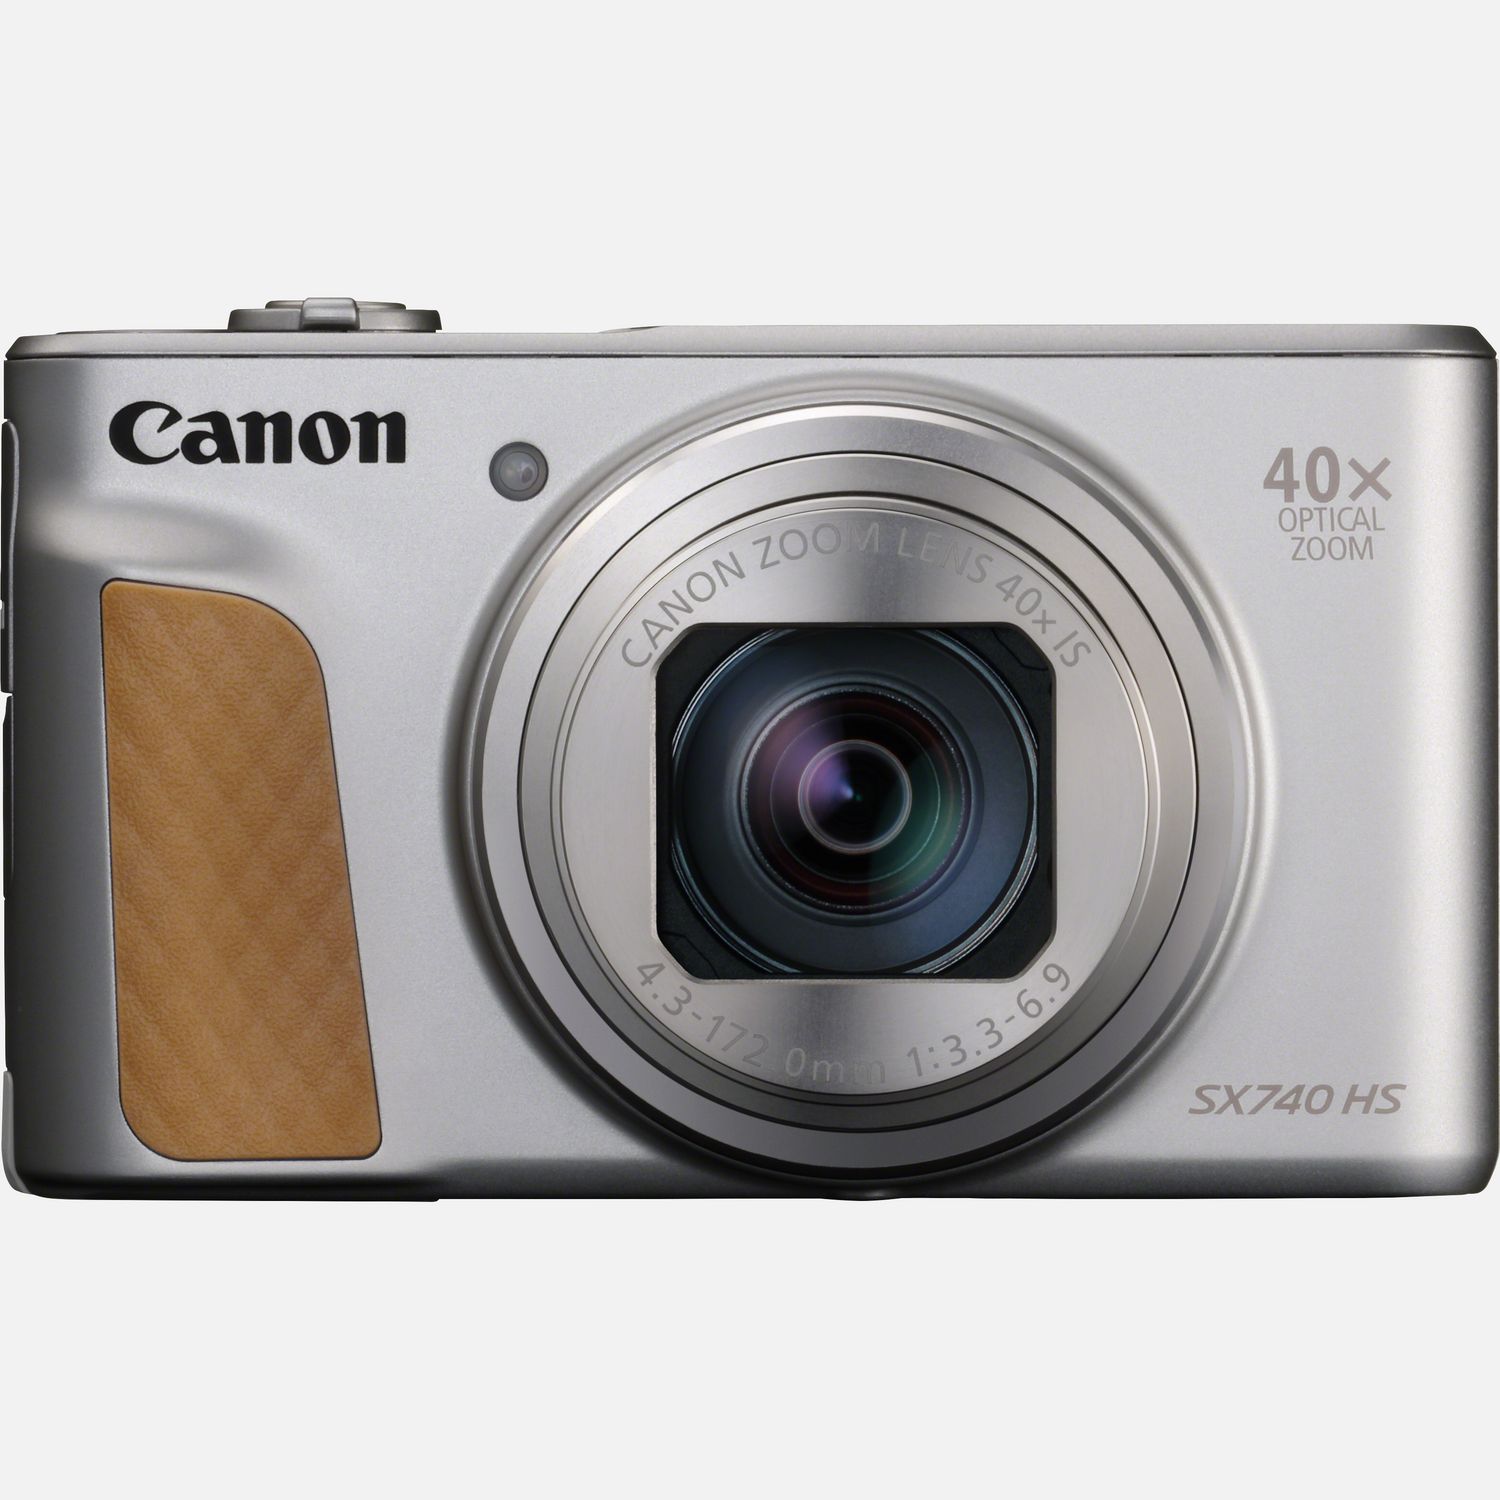 Mit der 39,9 mm tiefen, kompakten Canon PowerShot SX740 HS hast du alles in der Tasche, was du fr gute Aufnahmen brauchst. Mit dem 40fach optischen Zoom kannst du auergewhnliche Details in 20,3 Megapixeln festhalten  und ganz einfach ber WLAN und Bluetooth teilen. Du kannst unterwegs Movies mit beeindruckender 4K-Auflsung aufnehmen und der DIGIC 8 Prozessor hilft dabei, das perfekte Foto zu machen. Diese kleine, aber leistungsstarke Kamera verfgt ber einen unglaublich reaktionsschnellen Auslser und macht Reihenaufnahmen mit bis zu 10 Bildern pro Sekunde  damit dir keine Aufnahme entgeht.  Vorteile      Die nur 39,9 mm tiefe Canon PowerShot SX740 HS im Taschenformat bringt Motive mit dem 40fach optischem Zoom  mit ZoomPlus auf 80fach verdoppelt  und einem 20,3 Megapixel CMOS-Sensor ganz nah heran          Die PowerShot SX740 HS erfasst auch unterwegs alles in kristallklaren Details, dank der brillanten 4K Ultra High Definition Movieauflsung. Mit dem integrierten Stereomikrofon kannst du auch den Ton fr deine Videos aufnehmen          Einfach Motiv anvisieren und auslsen  der einzigartige DIGIC 8 Prozessor verwaltet automatisch die Kameraeinstellungen wie Hybrid Auto und Zoom-Assistent          Dank des extrem reaktionsschnellen Auslsers und der Reihenaufnahmen mit bis zu 10 Bildern pro Sekunde hltst du jeden Moment fest  oder mach mal eine Pause von der Action, um ein Selfie mit dem Selbstportrt-Modus und dem klappbaren LCD aufzunehmen          Teile Fotos ganz einfach ber die erweiterte Bluetooth- und WLAN-Konnektivitt und sichere deine Erinnerungen mit Auto Transfer, das automatisch ein Backup von deinen Aufnahmen auf dem Computer Zuhause oder einem anderen kompatiblem Gert erstellt          Lieferumfang       PowerShot SX740 HS  Silber         Handschlaufe WS-800         Akku NB-13L         AkkuladegertCB-2LHE         Netzkabel         Anleitungen              Technische Daten              Groer 40fach optischer Zoom                Canon DIGIC 8 Prozessor und CMOS-Sensor                20,3 Megapixel                Reihenaufnahmen mit bis zu 10 Bildern pro Sekunde                Bluetooth                5-achsige-Bildstabilisierung                Um 180 klappbares LCD                WLAN-Konnektivitt                4K Ultra High Definition Movies          Alle technischen Daten zeigen